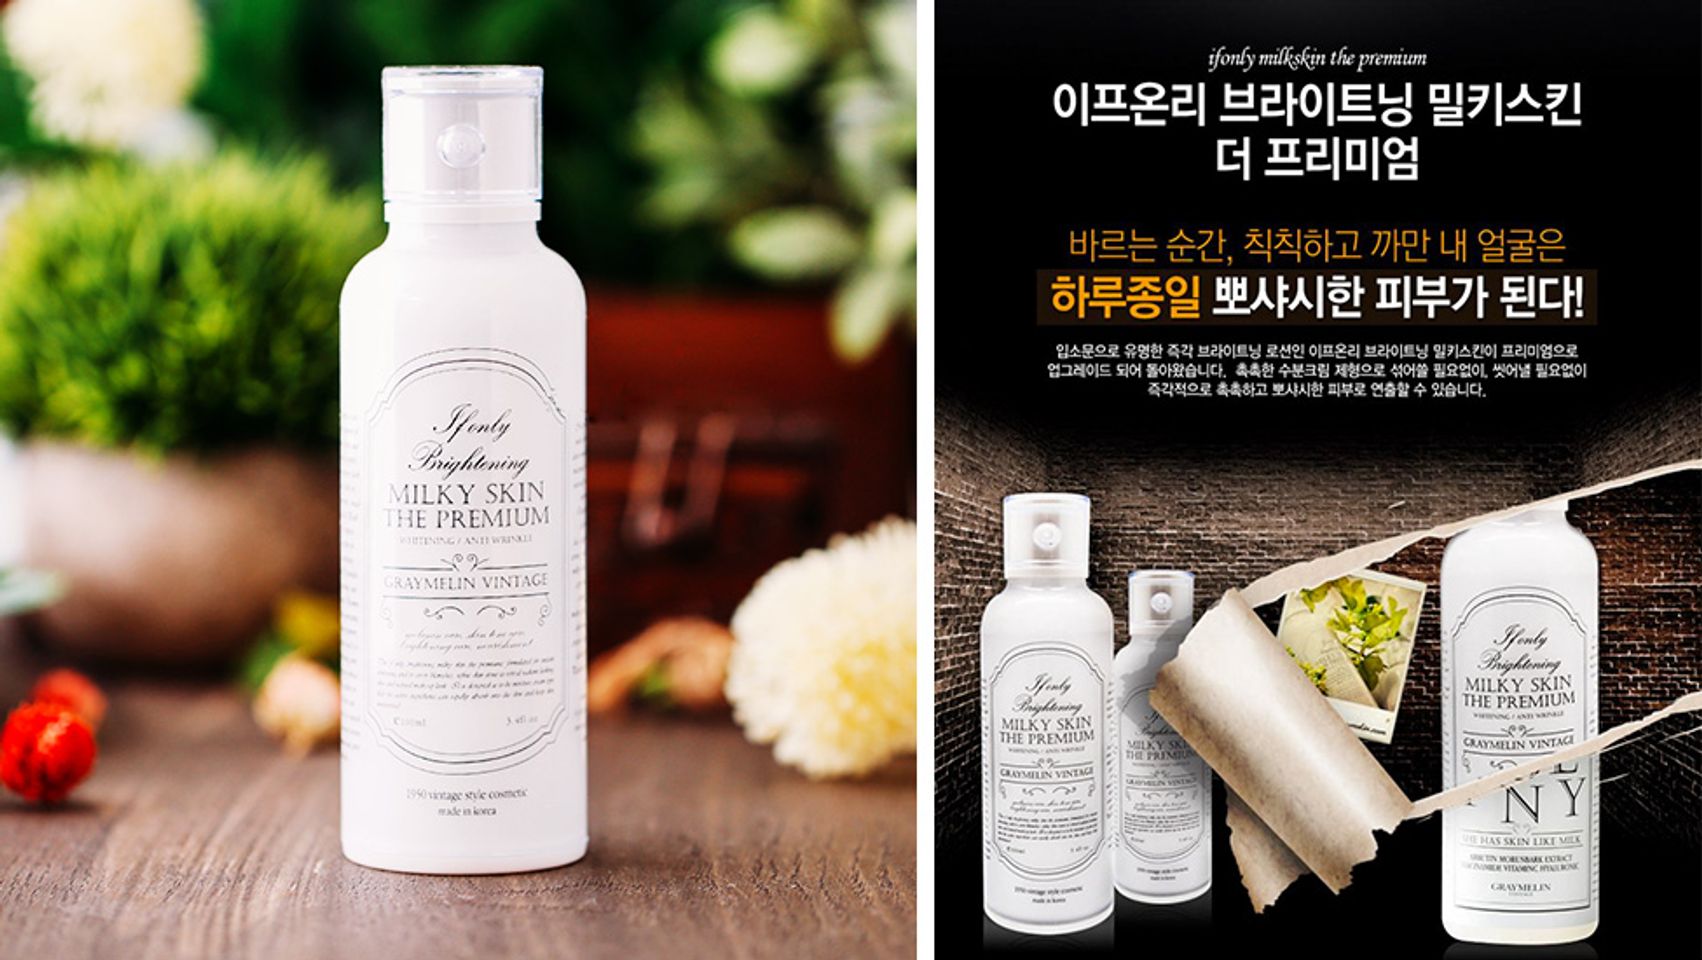 Kem dưỡng trắng da Milky Skin The Premium Hàn Quốc